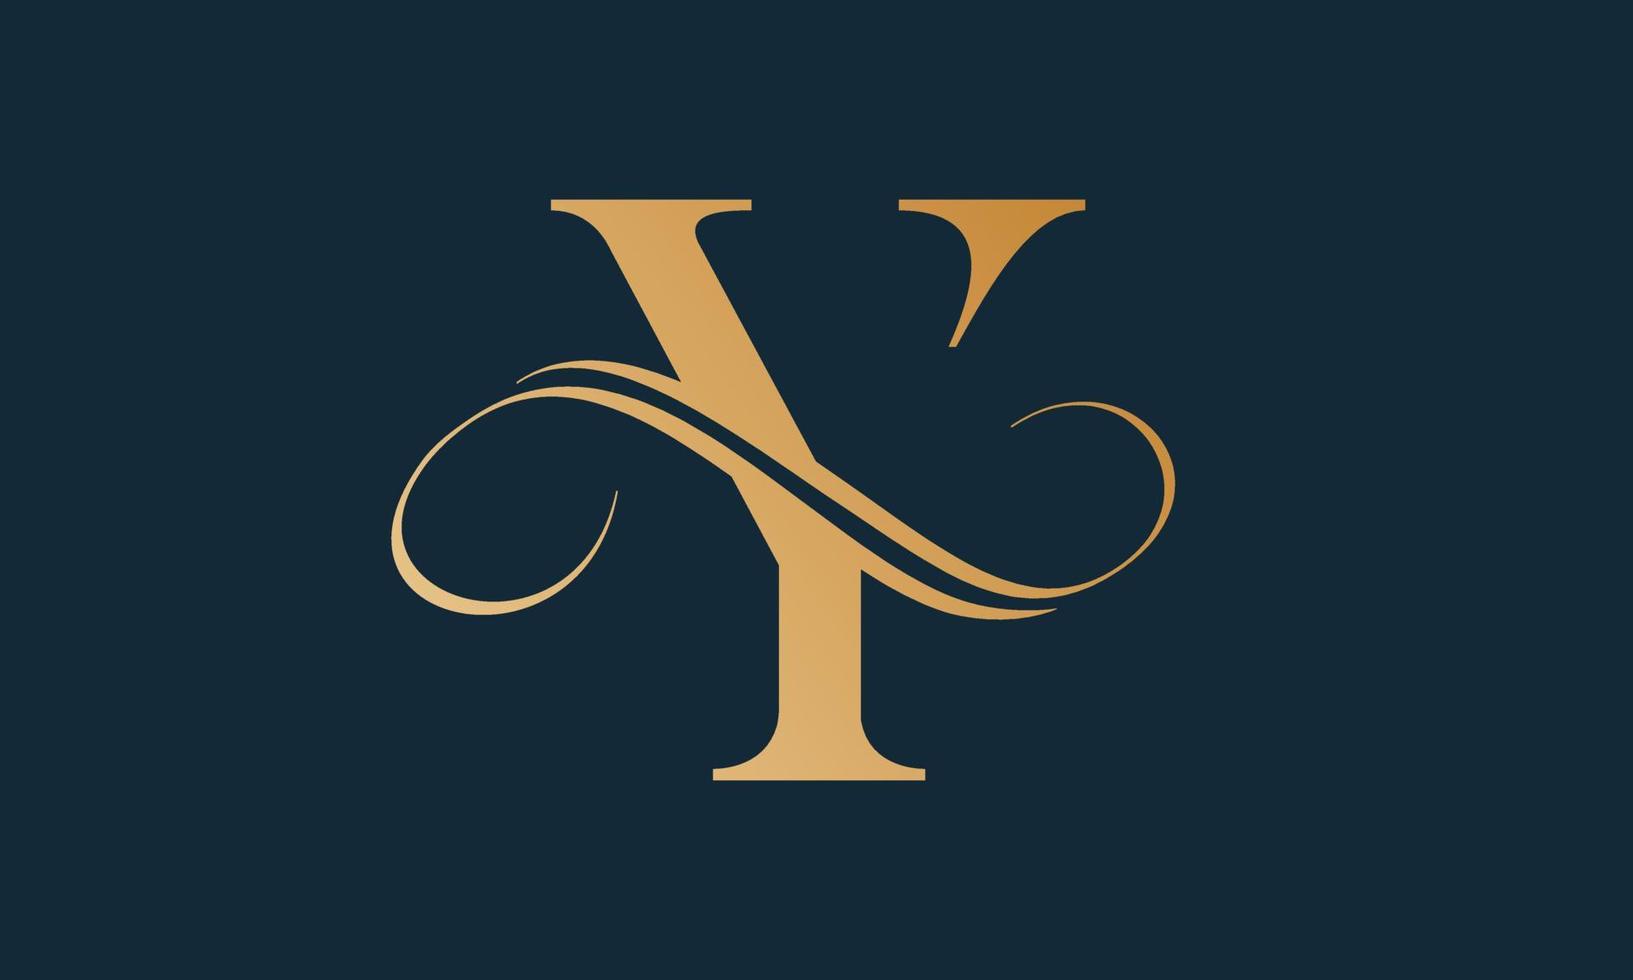 luxus-buchstabe y-logo-vorlage in goldfarbe. modernes, trendiges initiales luxus-y-buchstaben-logo-design. königliche Premium-Buchstabe y-Logo-Design-Vektorvorlage. vektor